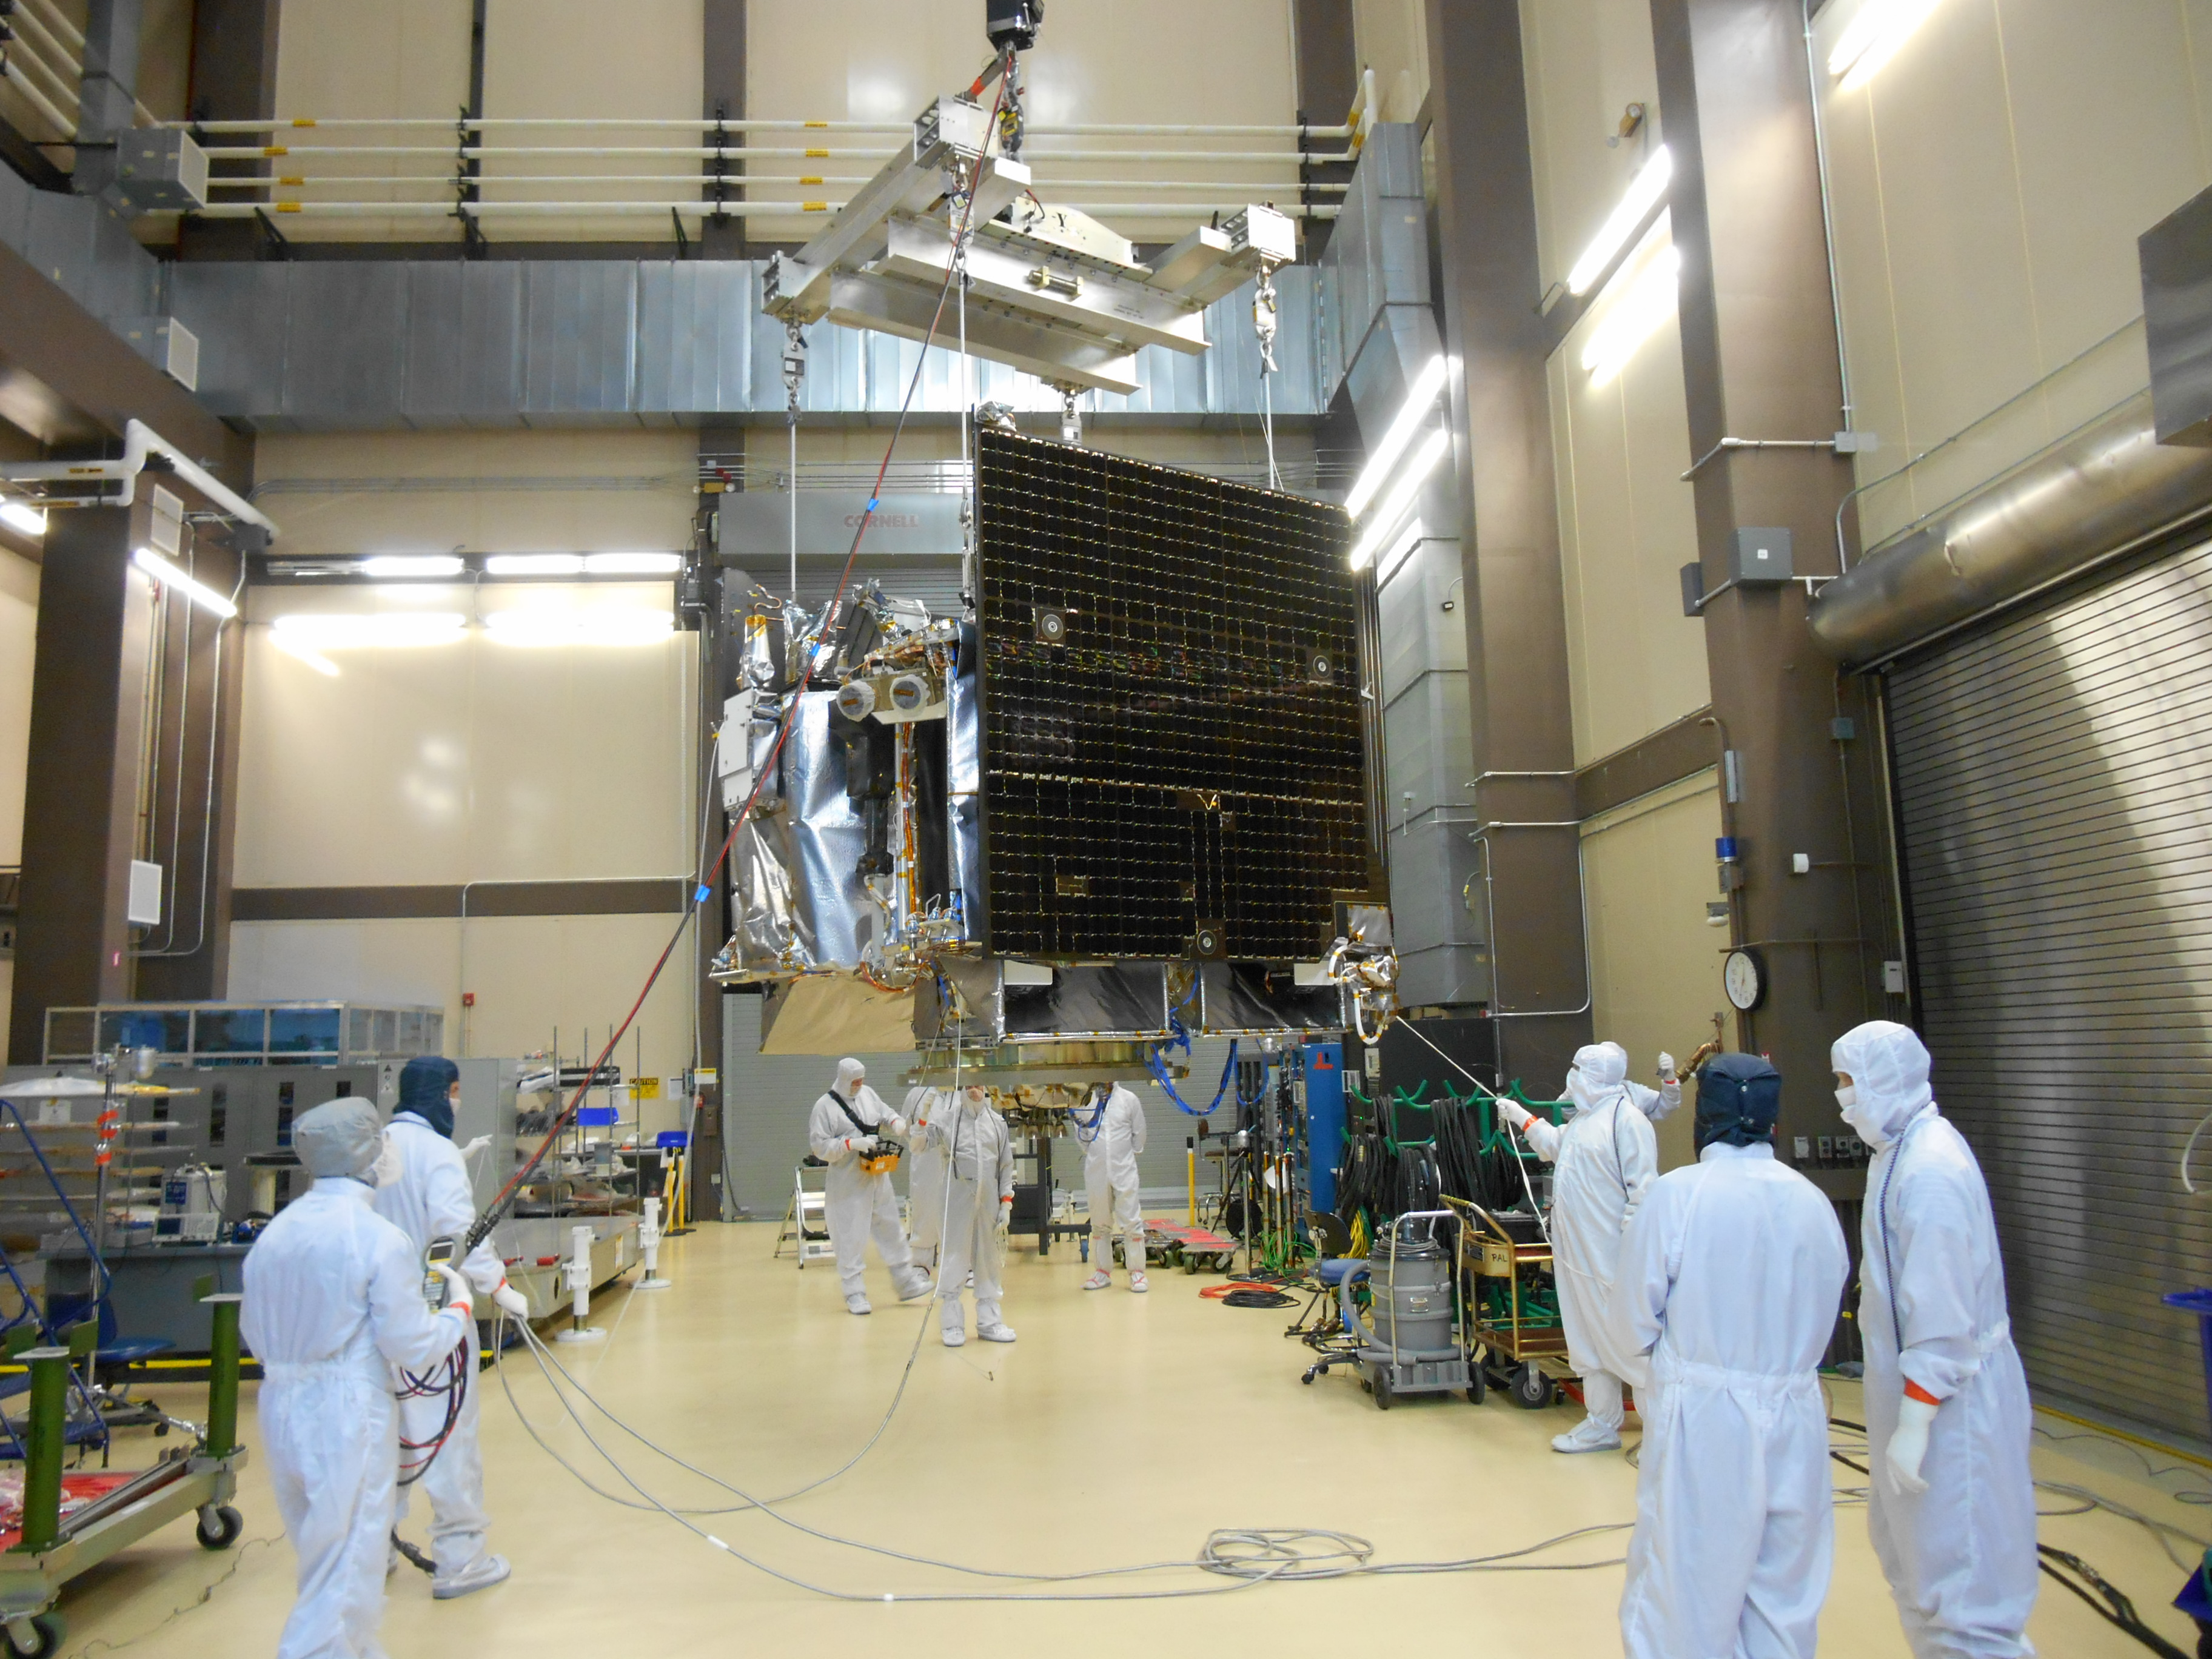  فضاپیمای OSIRIS-REx ناسا به دنبال کشف منشأ حیات در فضا